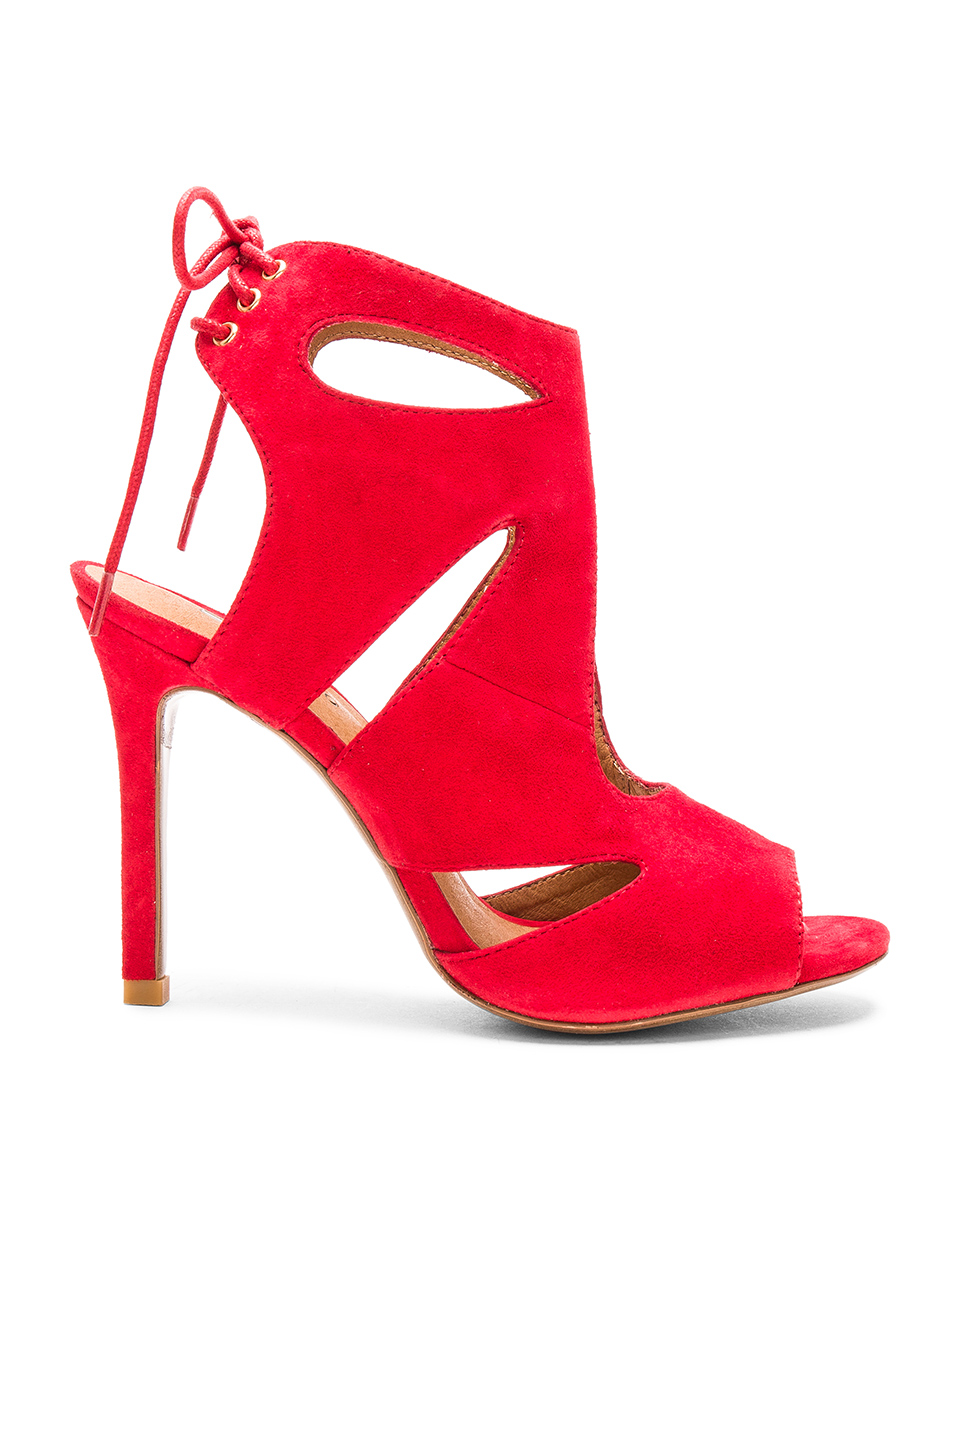 En Şık Kırmızı Topuklu Ayakkabı Stiletto Modelleri